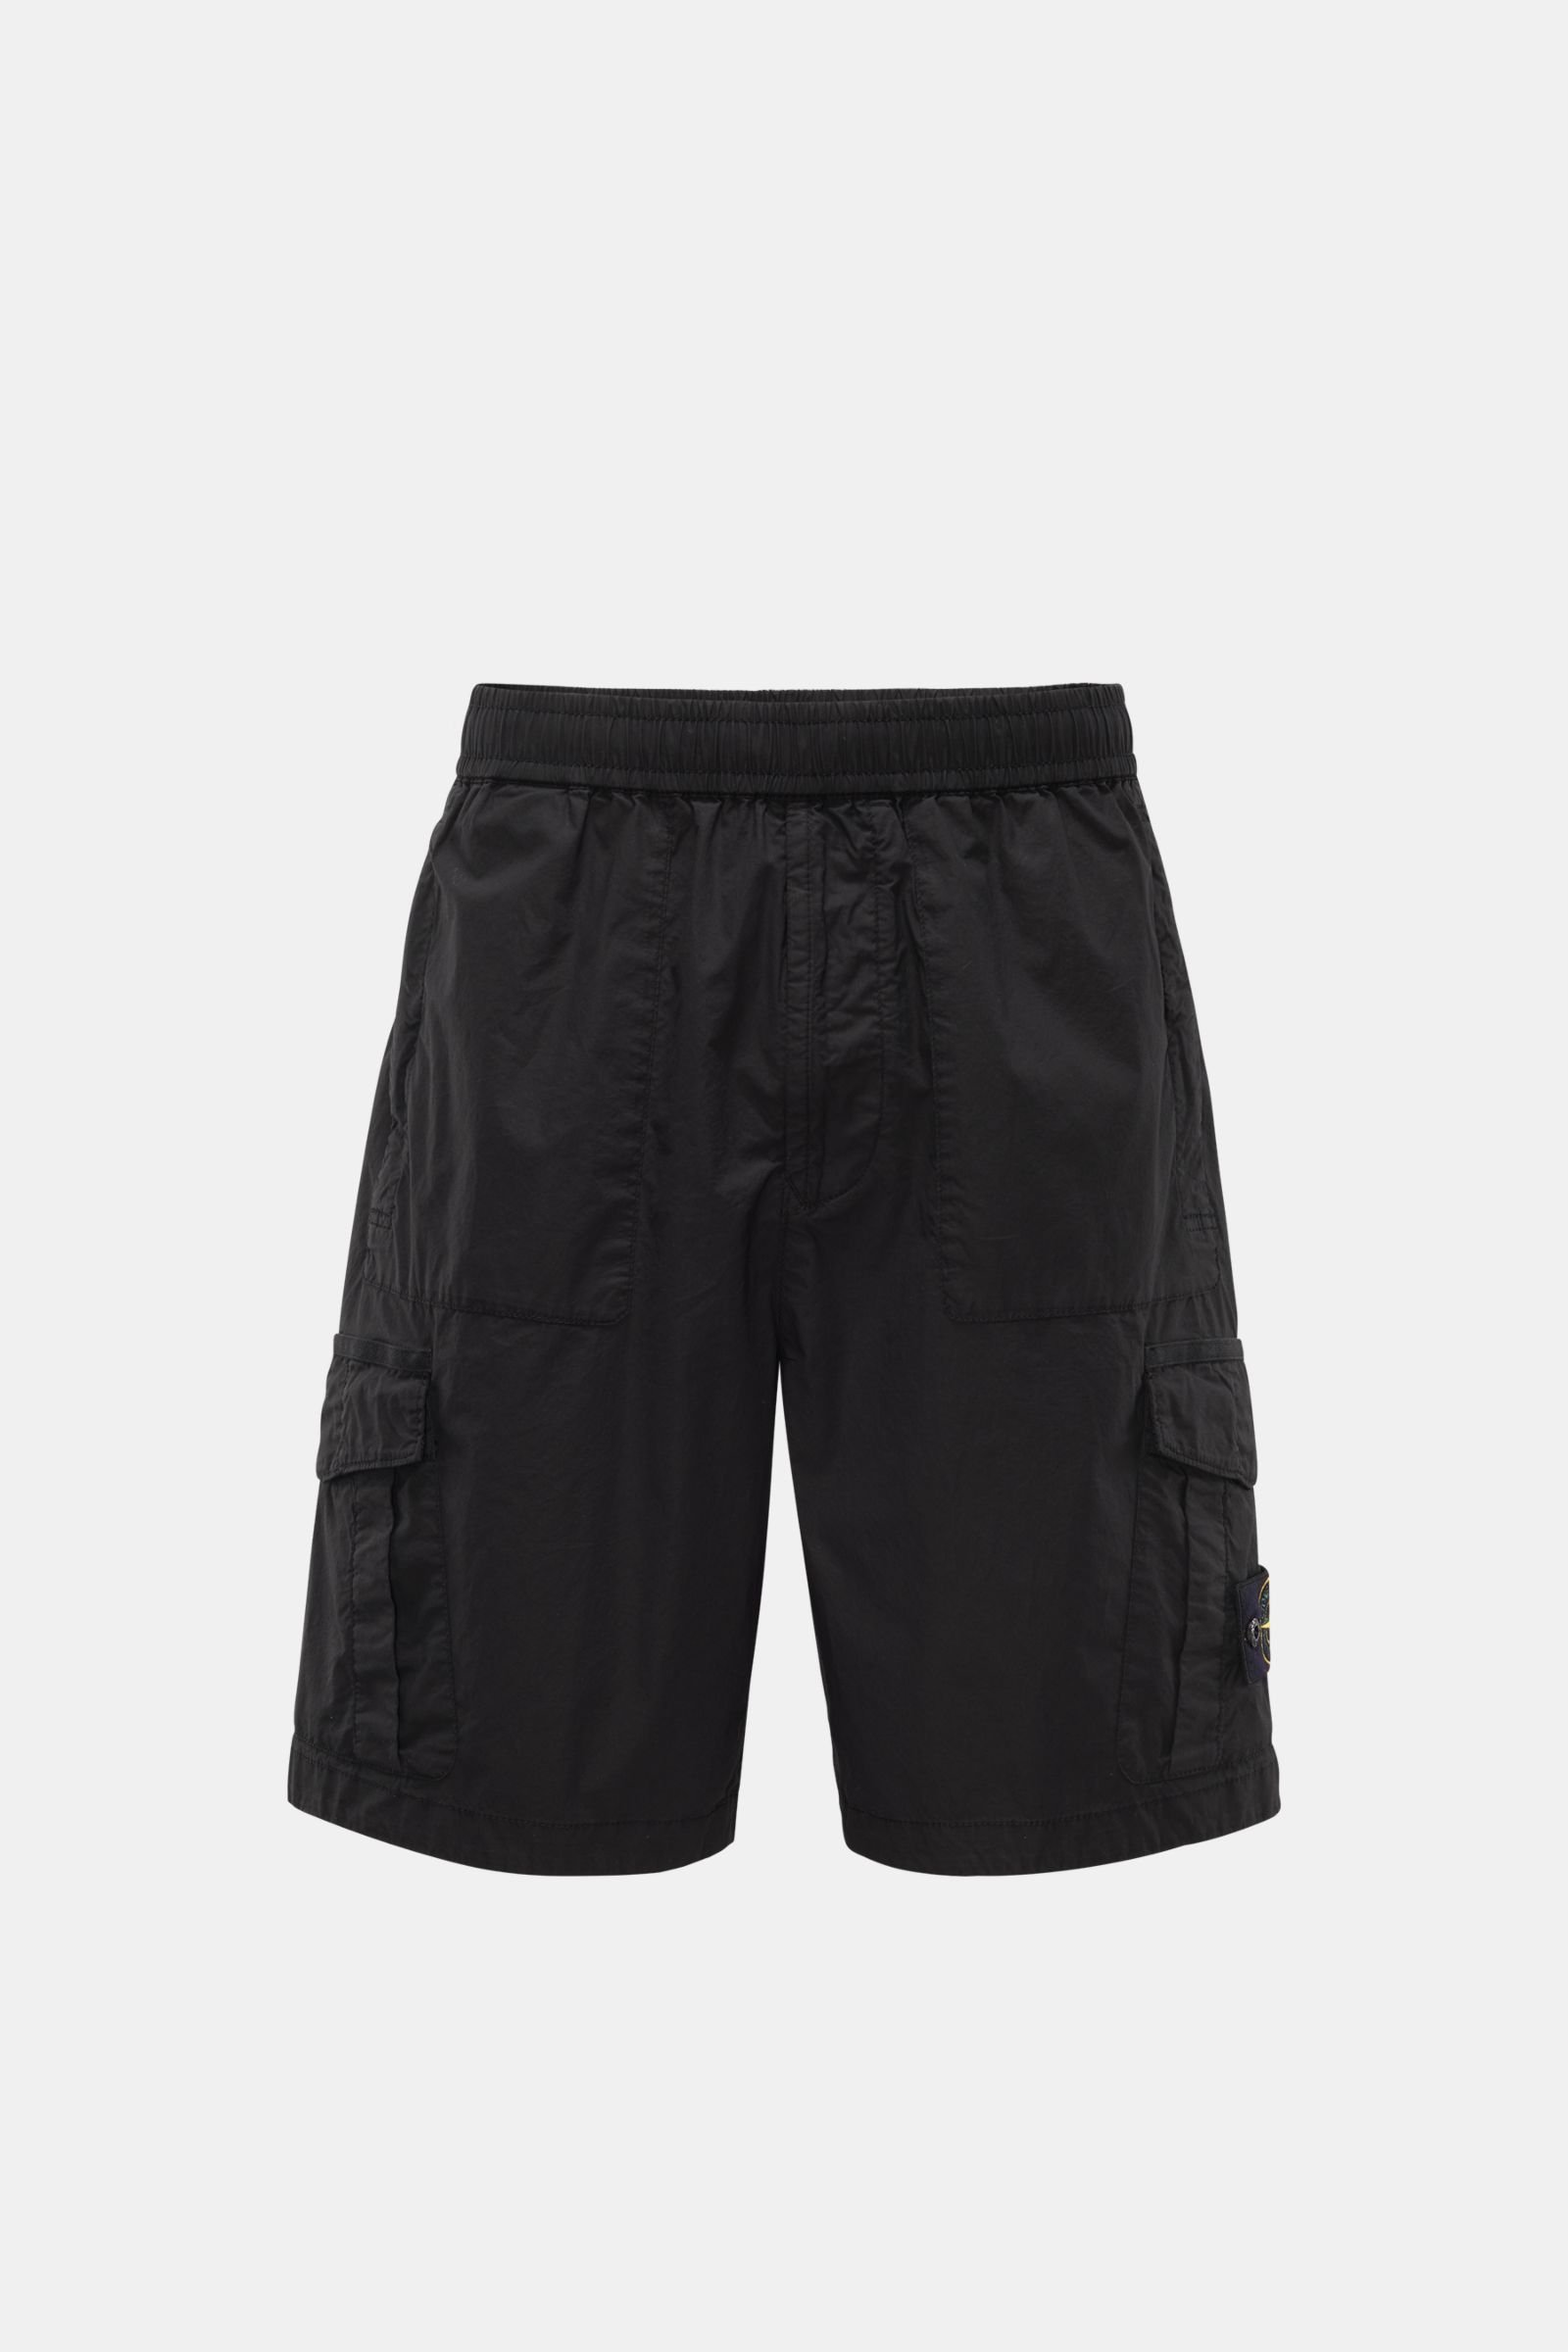 Cargo shorts black